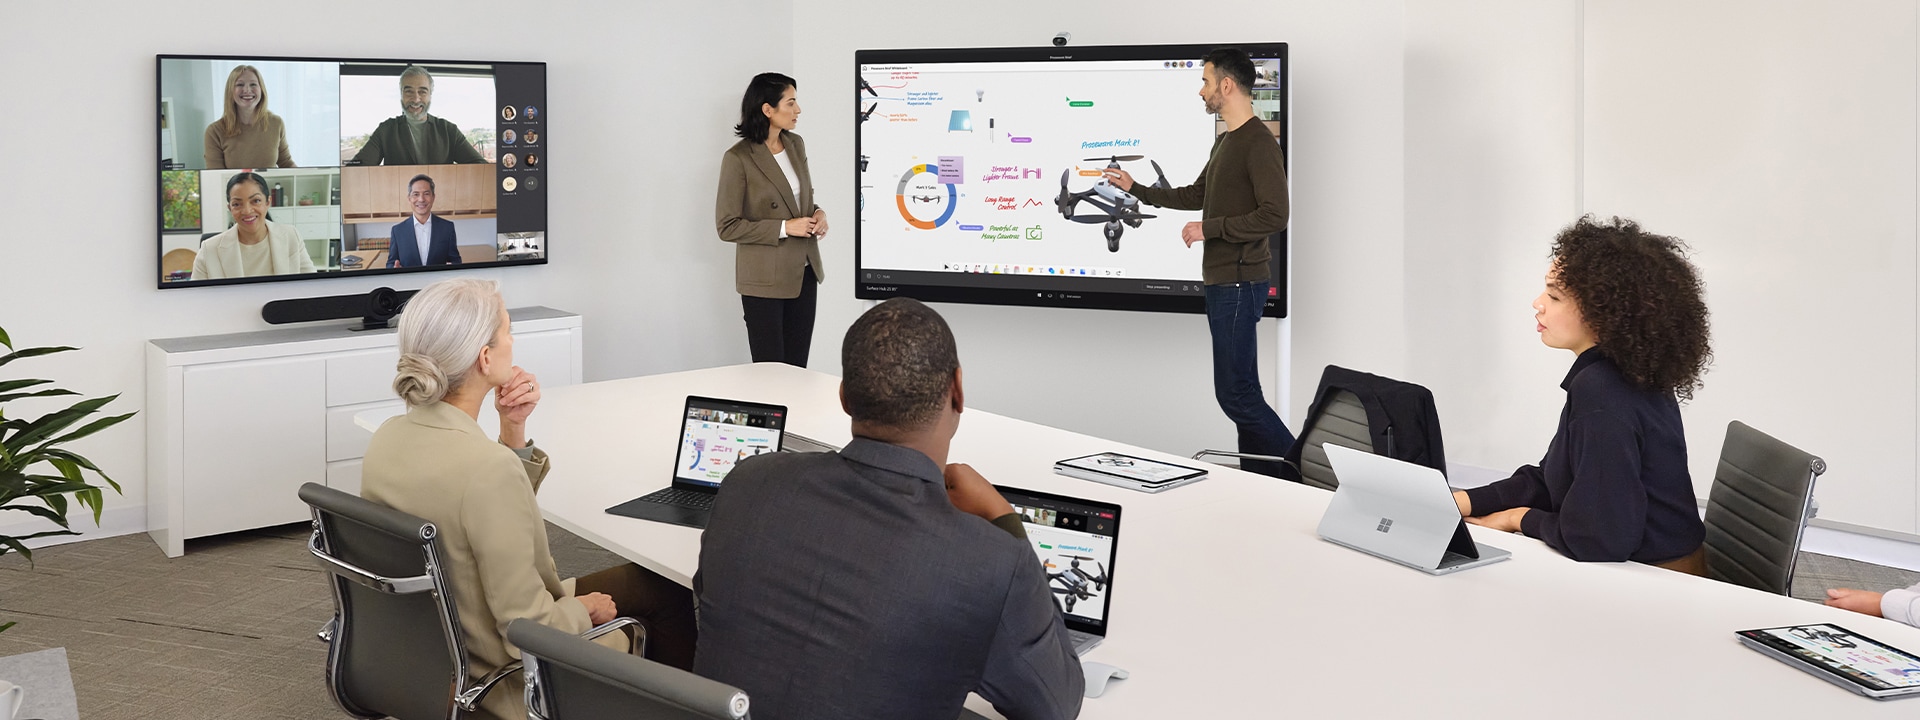 زميلا عمل يتعاونان باستخدام جهاز Surface Hub 2S بينما يرأسان أيضًا اجتماعًا افتراضيًا عبر Teams على جهاز Surface Laptop موضوع على مكتب قريب